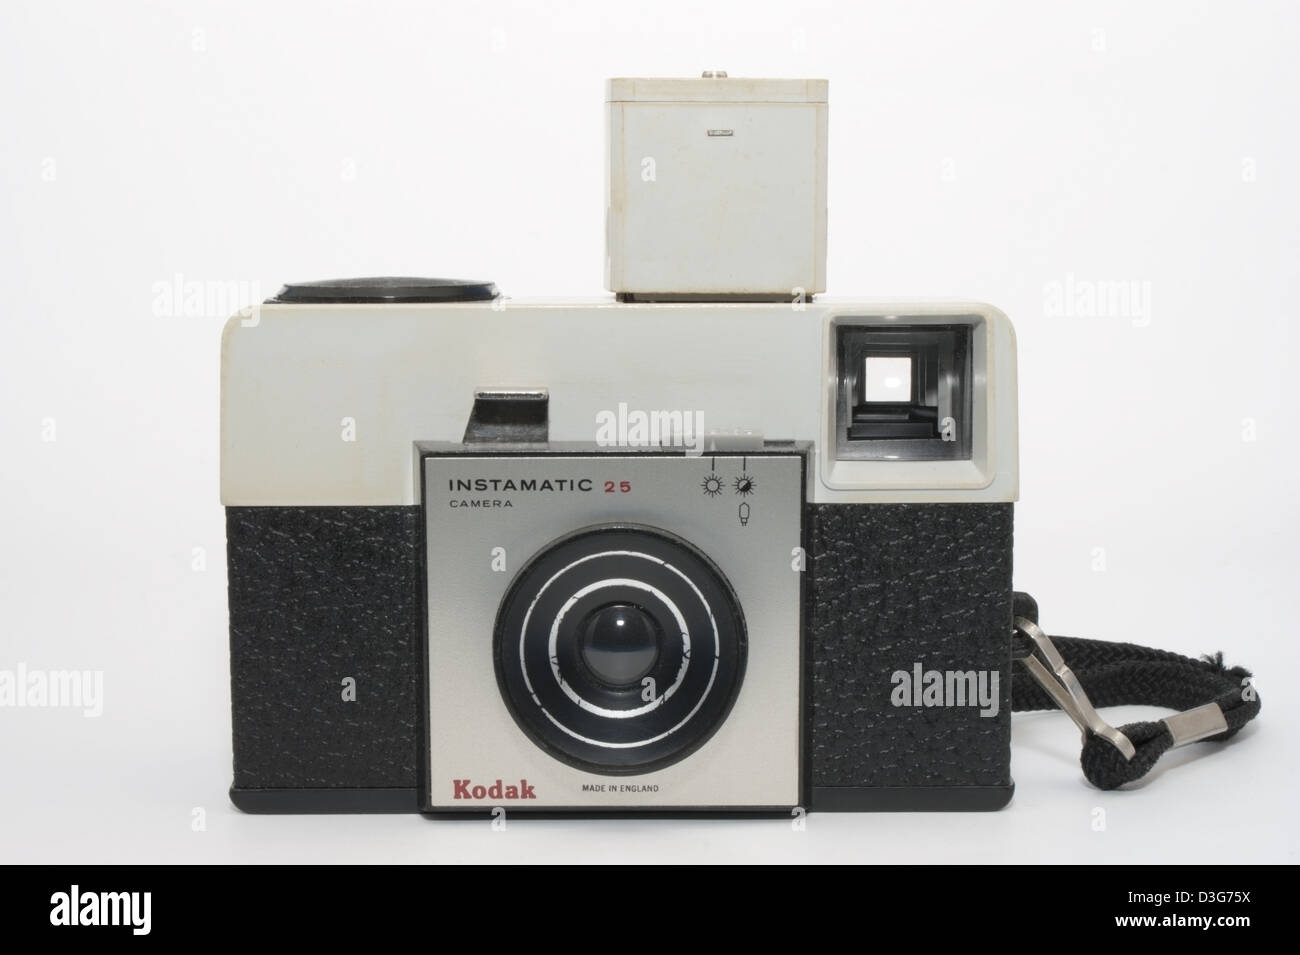 Kodak instamatic 25 126 fotocamera con hot shoe adattatore flash sulla fotocamera Foto Stock